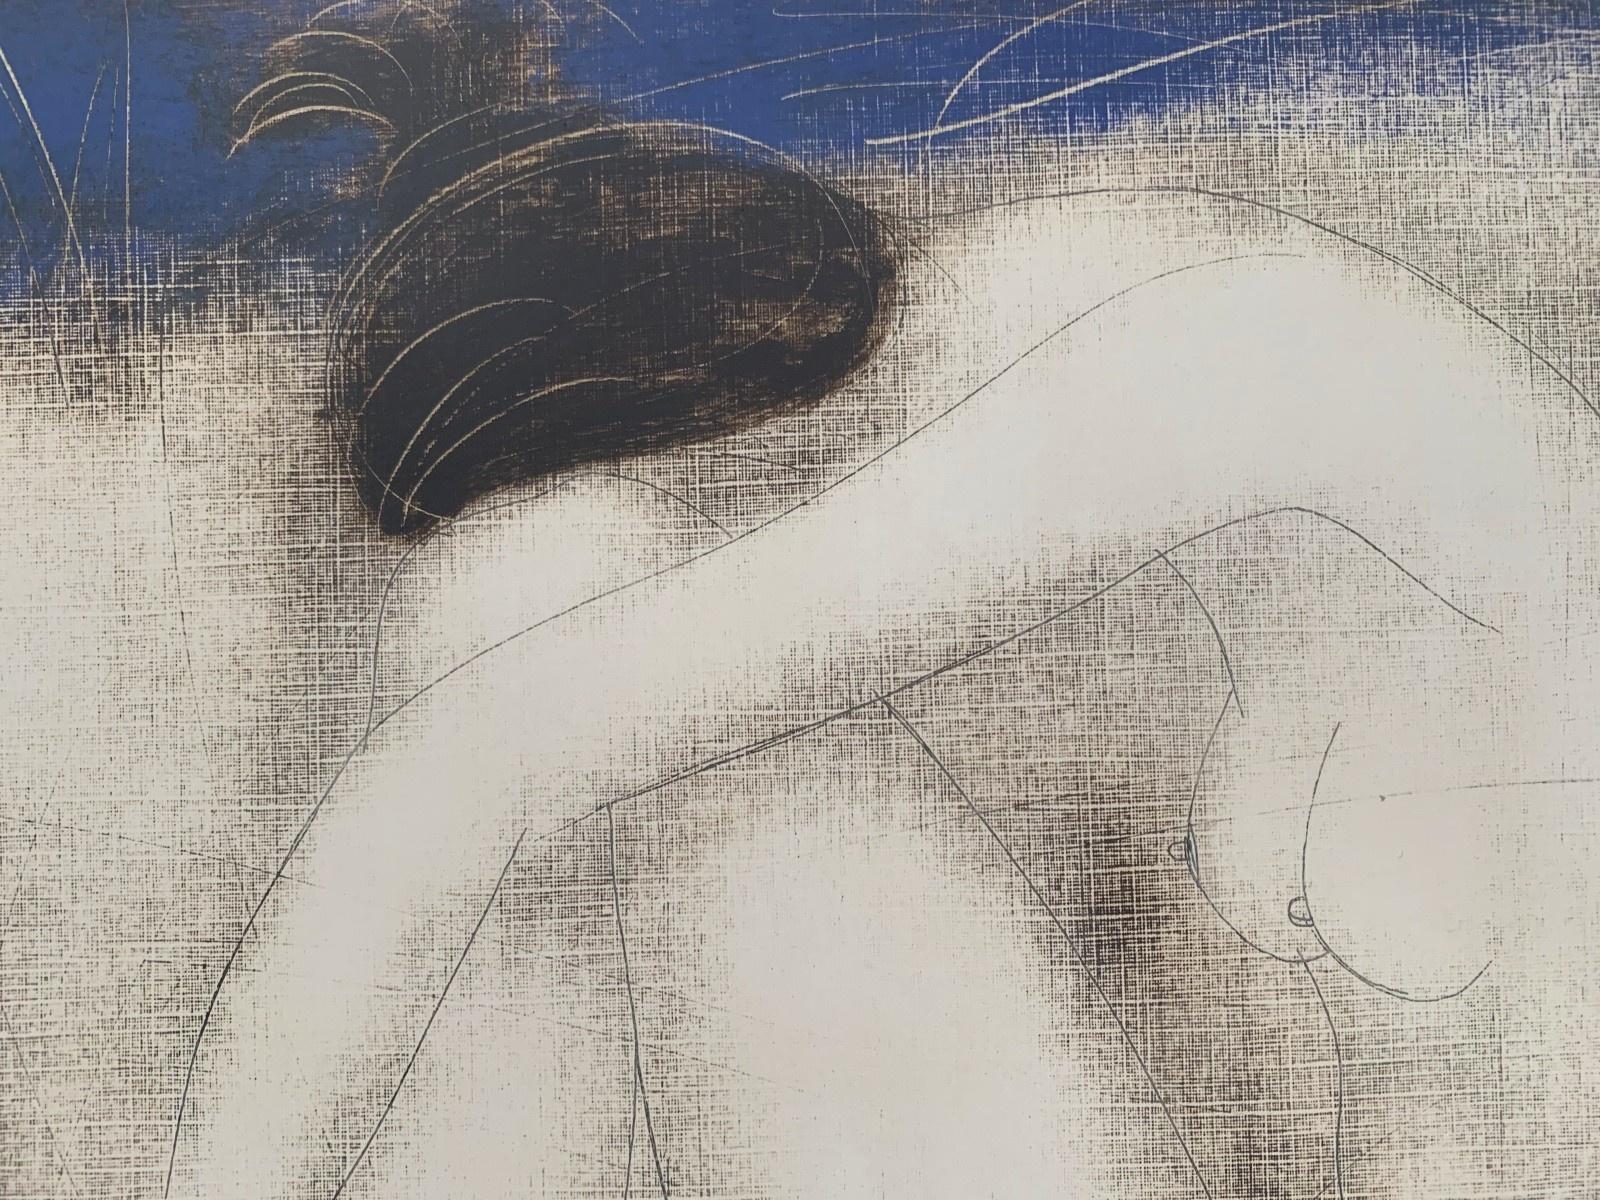 Nackt mit Schlauch. Contemporary Figurative Nude Monotype Print, europäischer Künstler (Braun), Nude Print, von Siergiej Timochow